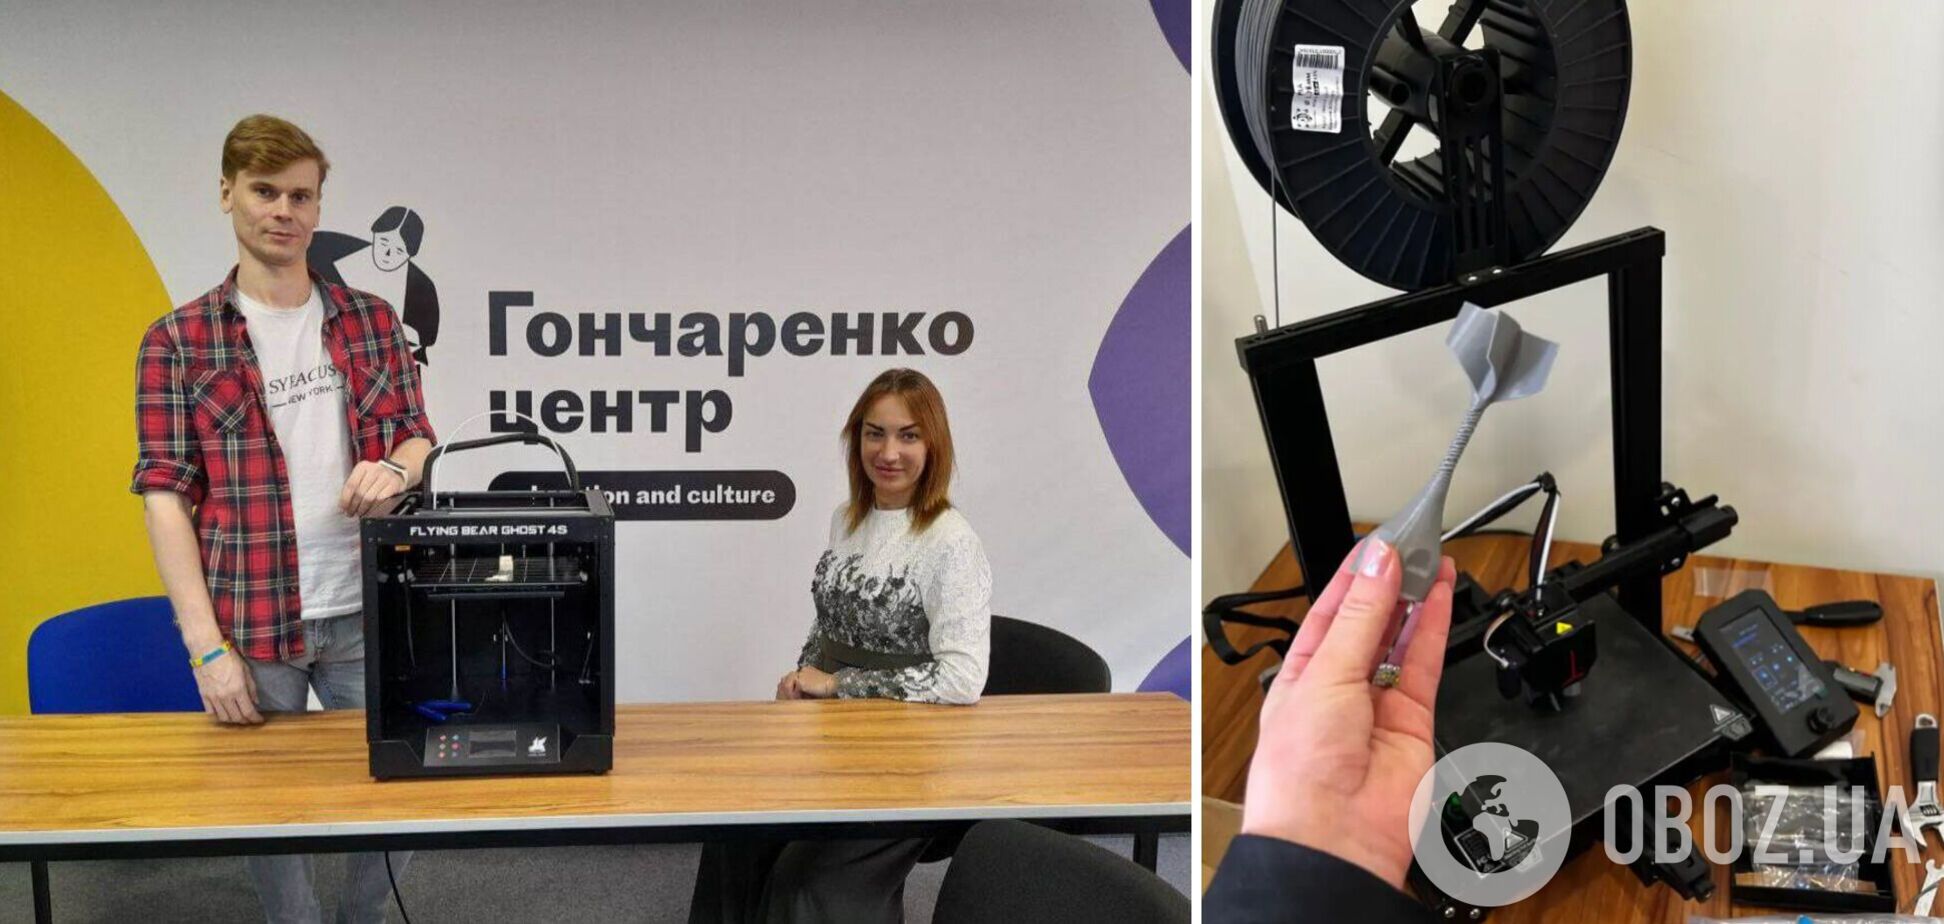 В 10 містах України запустили безкоштовні майстерні 3D-друку в 'Гончаренко центрах'